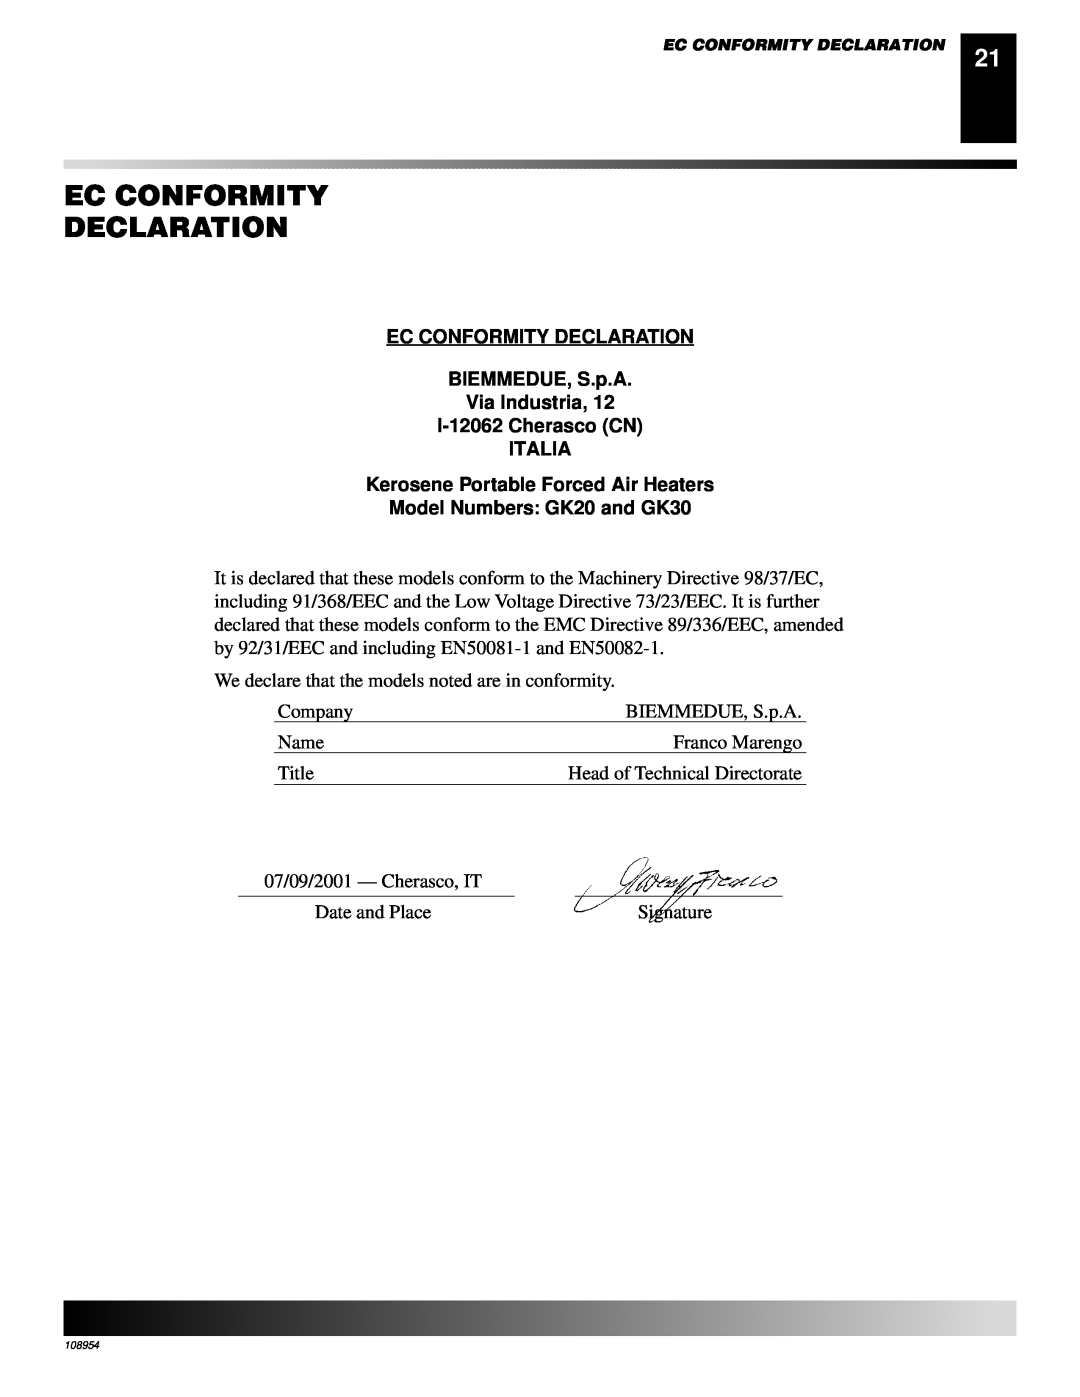 Desa GK30 Ec Conformity Declaration, EC CONFORMITY DECLARATION BIEMMEDUE, S.p.A, Via Industria, I-12062Cherasco CN ITALIA 